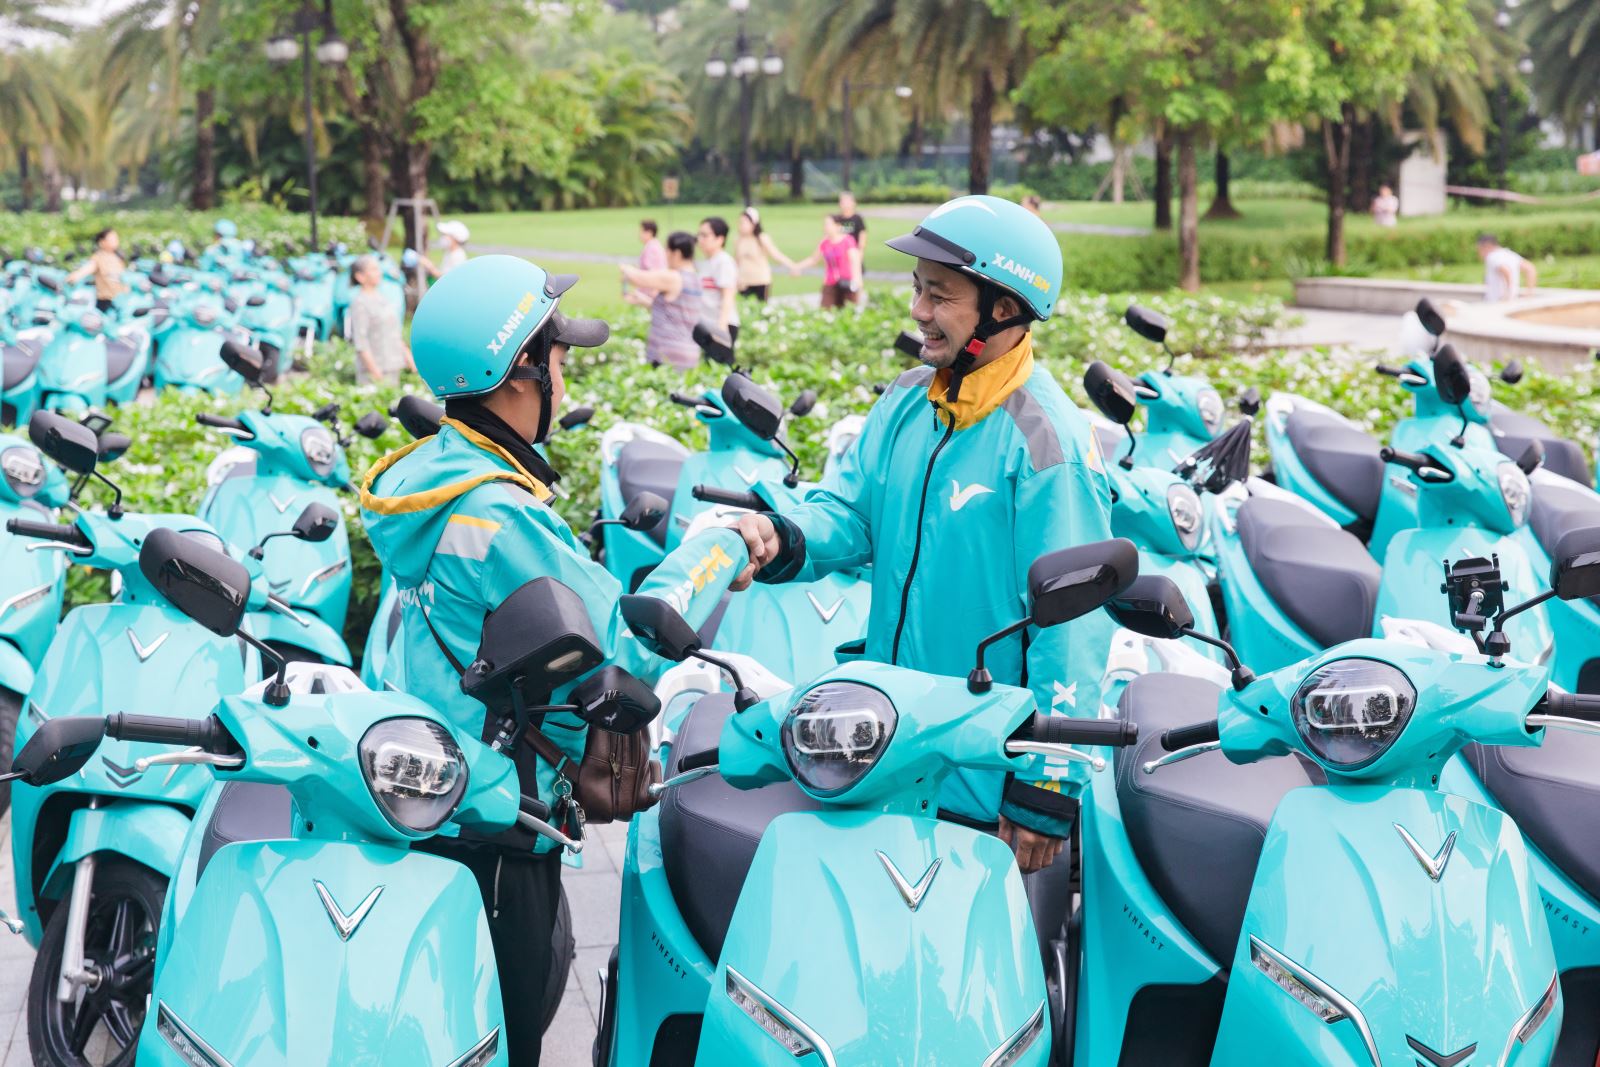 Xanh SM Bike chính thức ra mắt tại Tp.Hồ Chí Minh